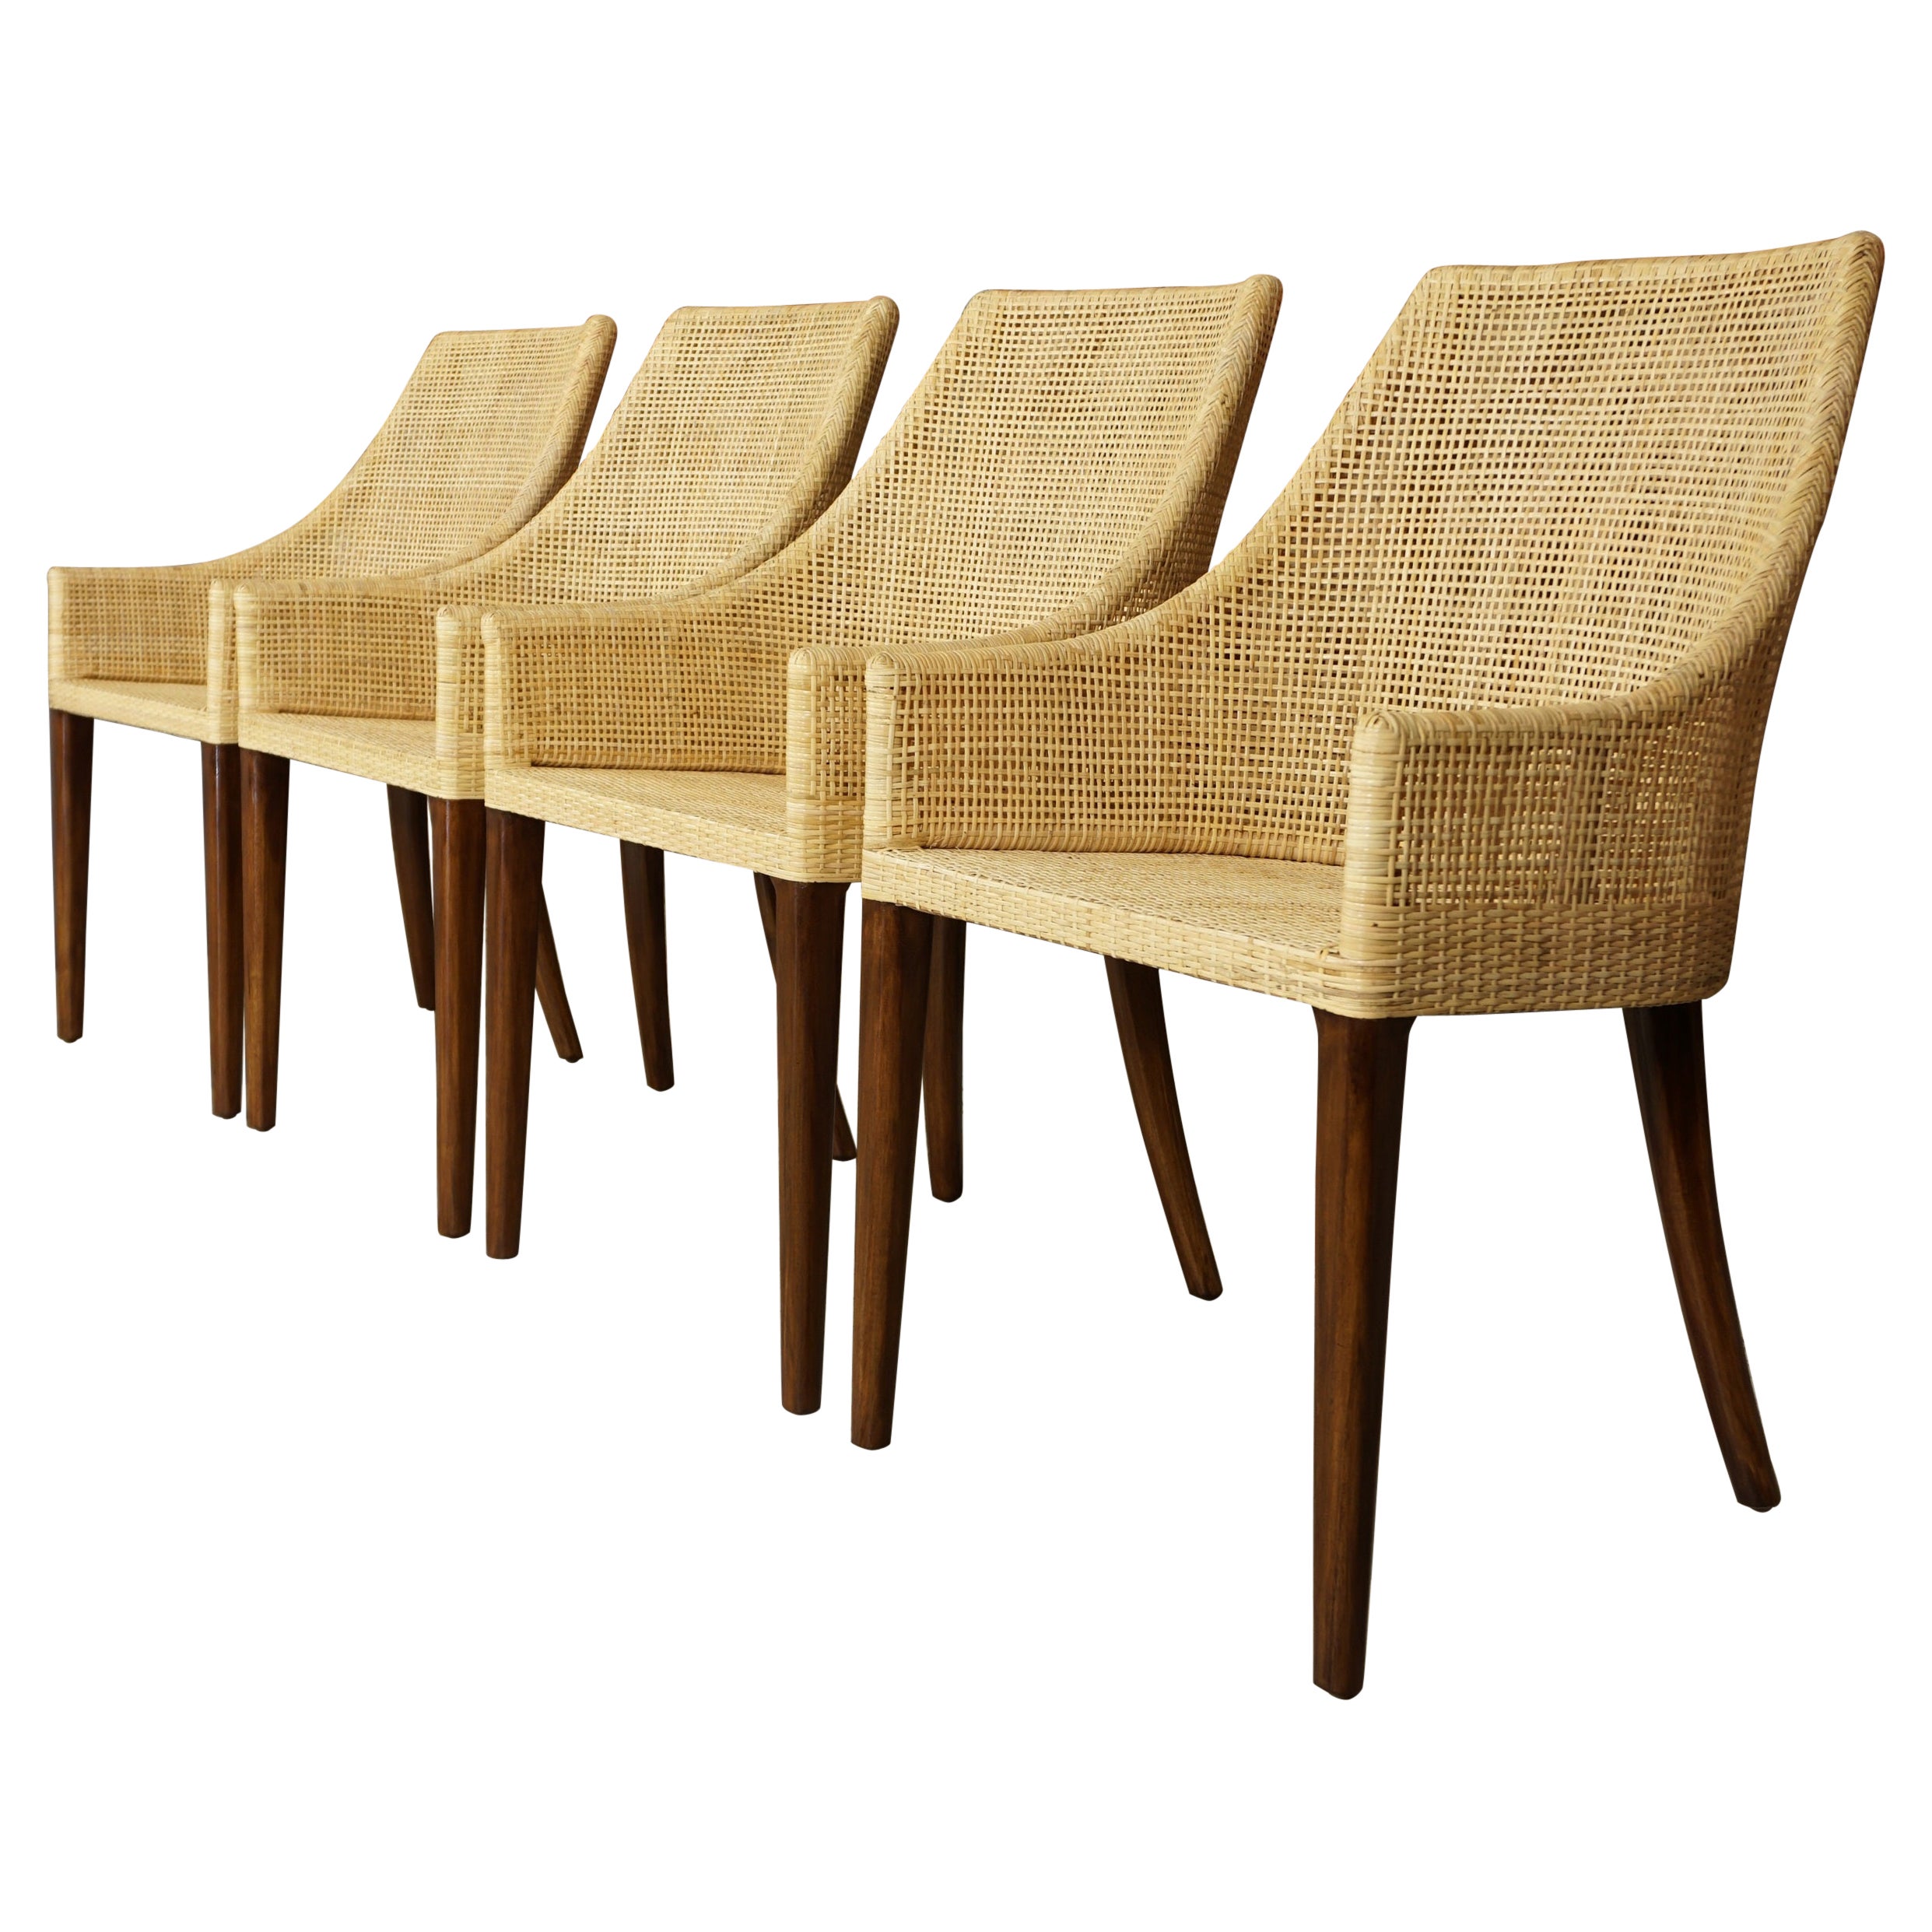  Französisches Design-Set aus Rattan und Holz mit 4 Stühlen